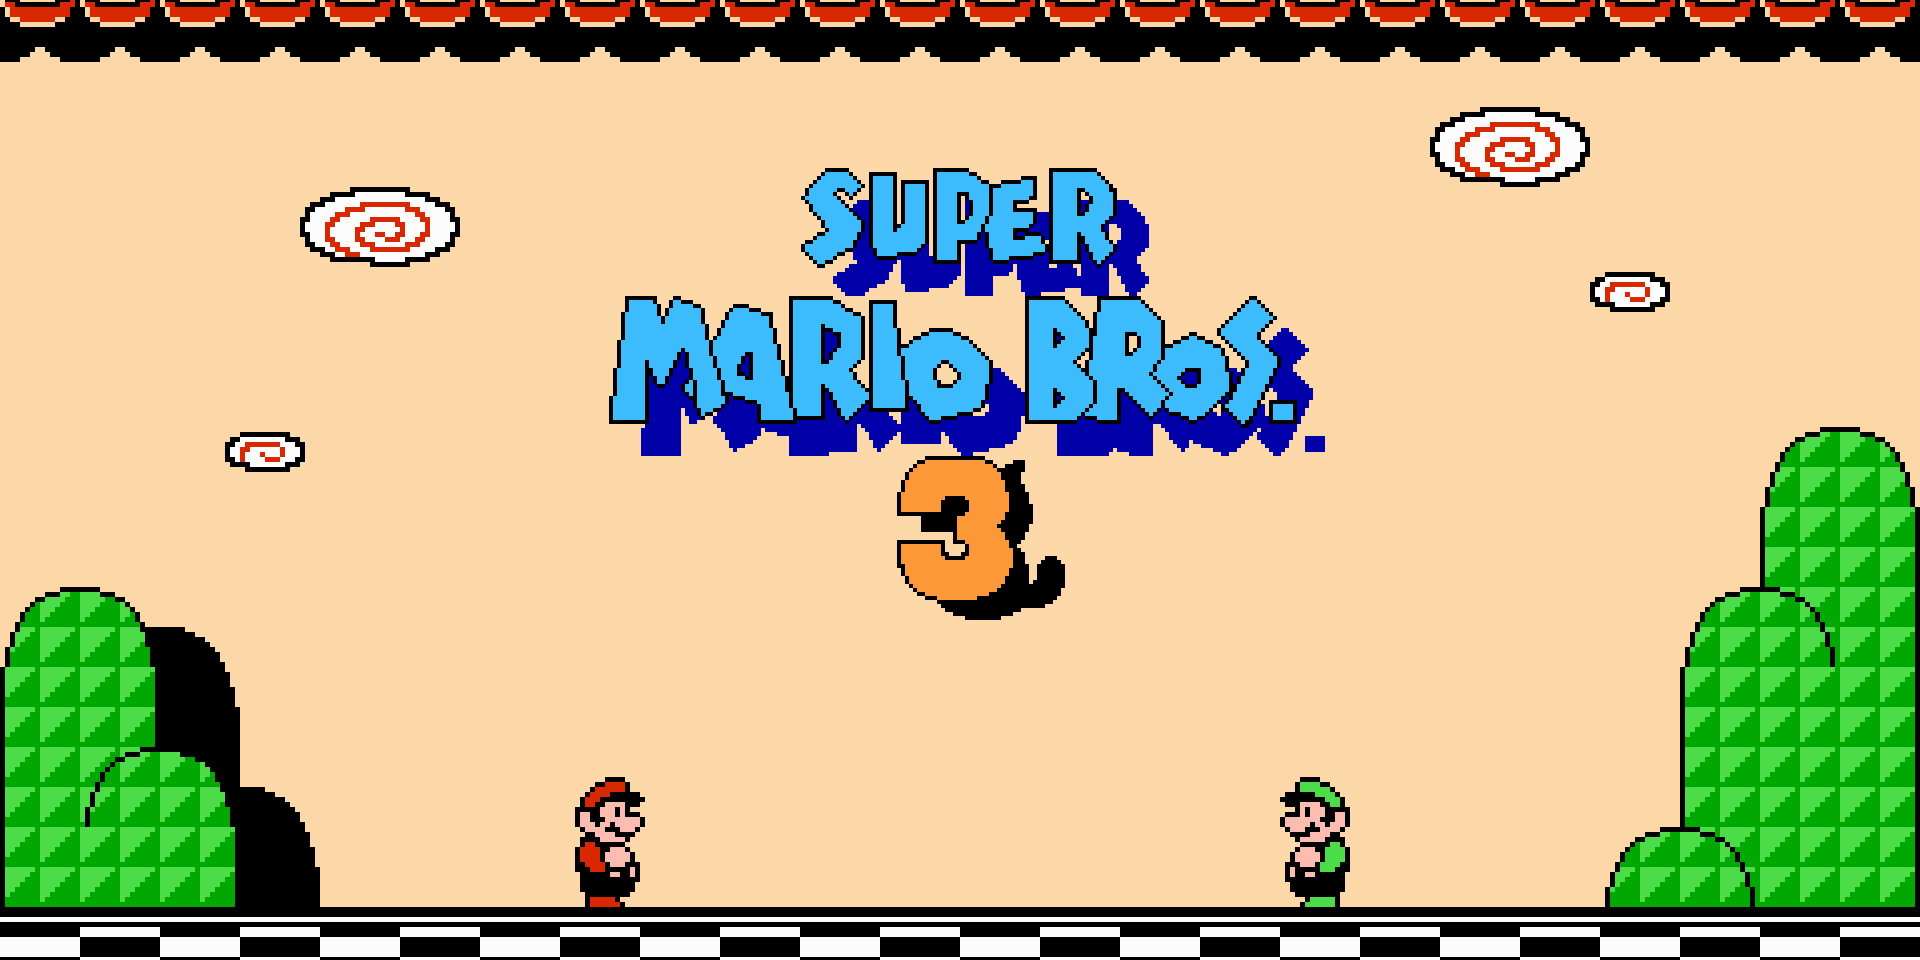 Super Mario Bros. 3 - GameSpot